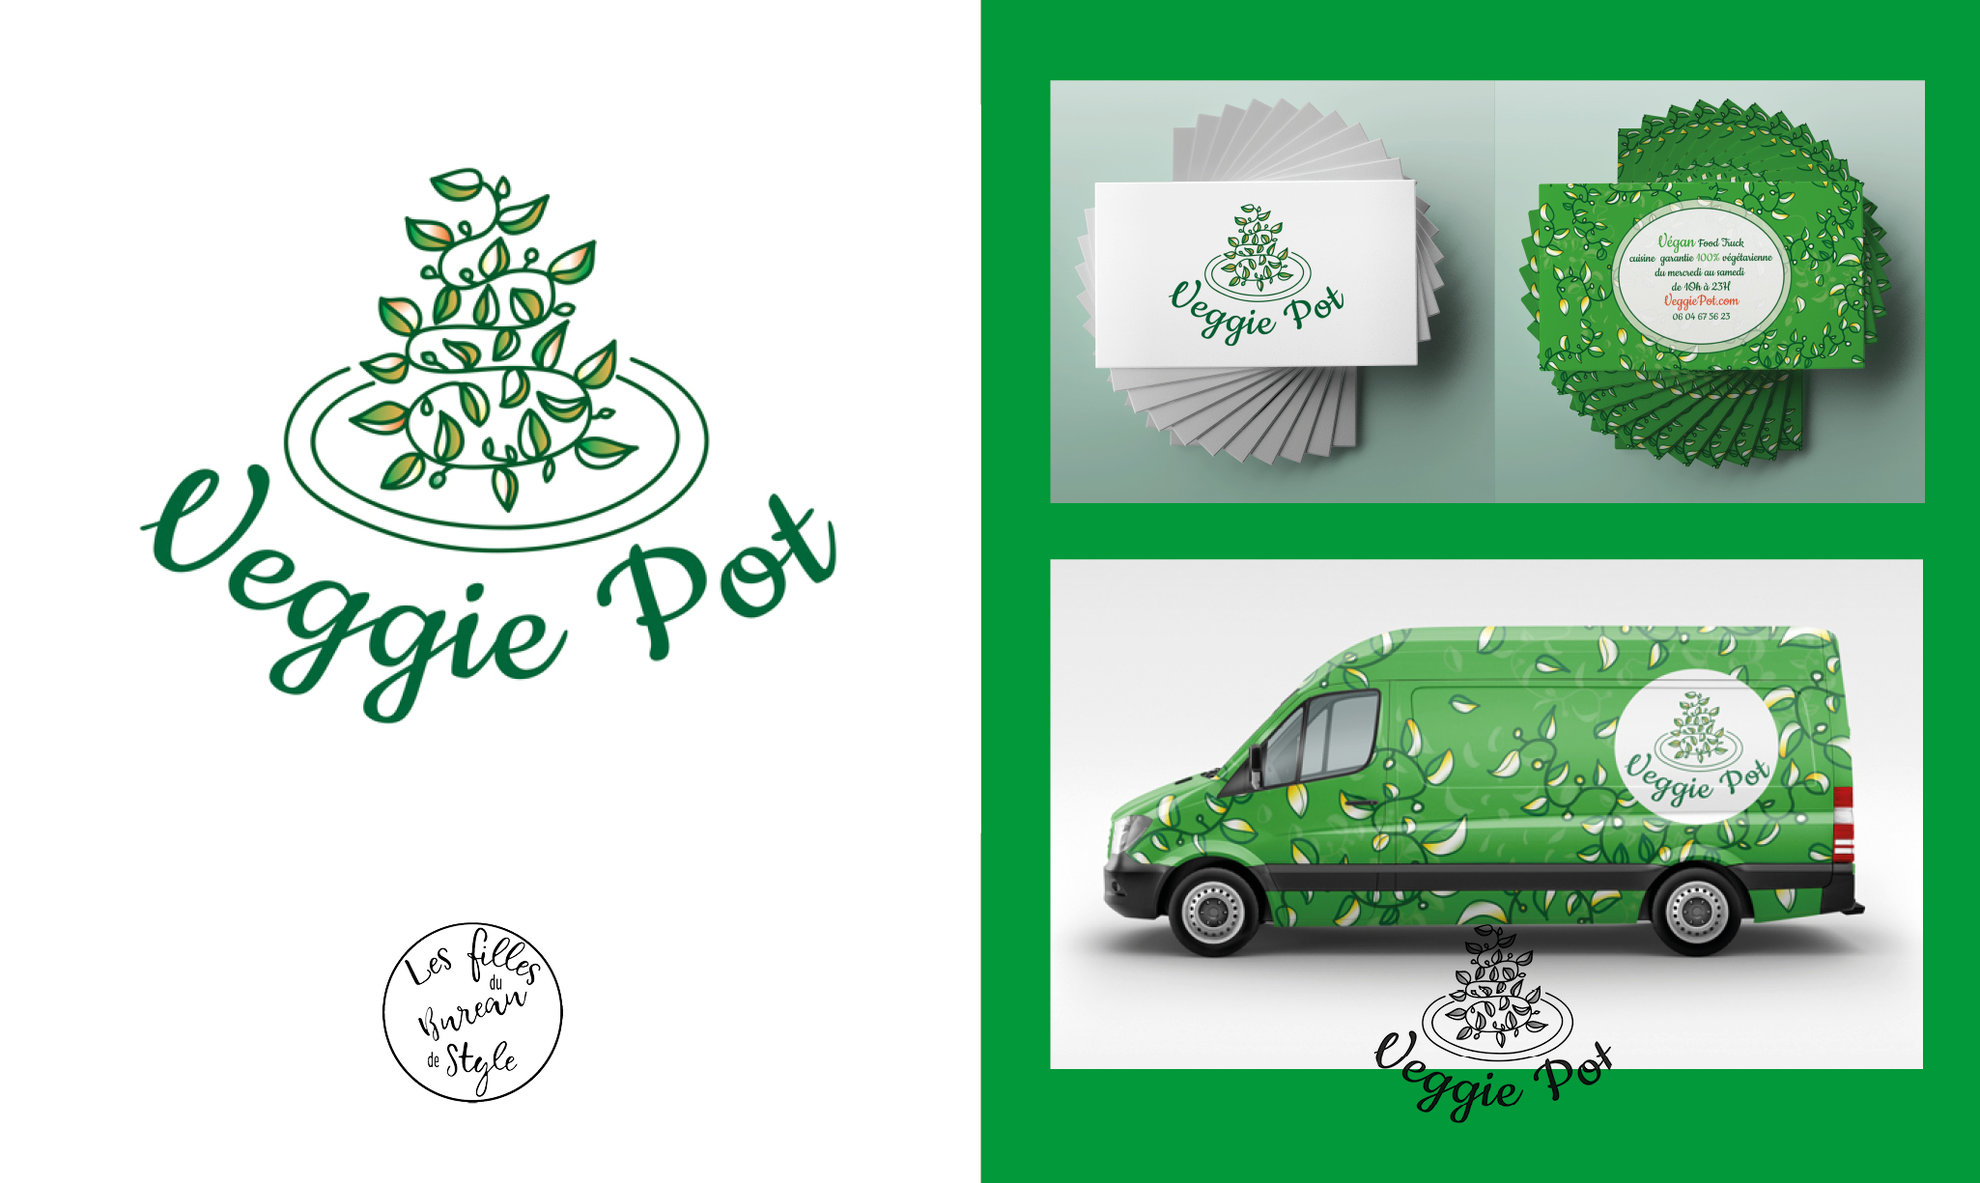 Identité visuelle pour le food-truck VeggiePot, logo, cartes de visite et covering